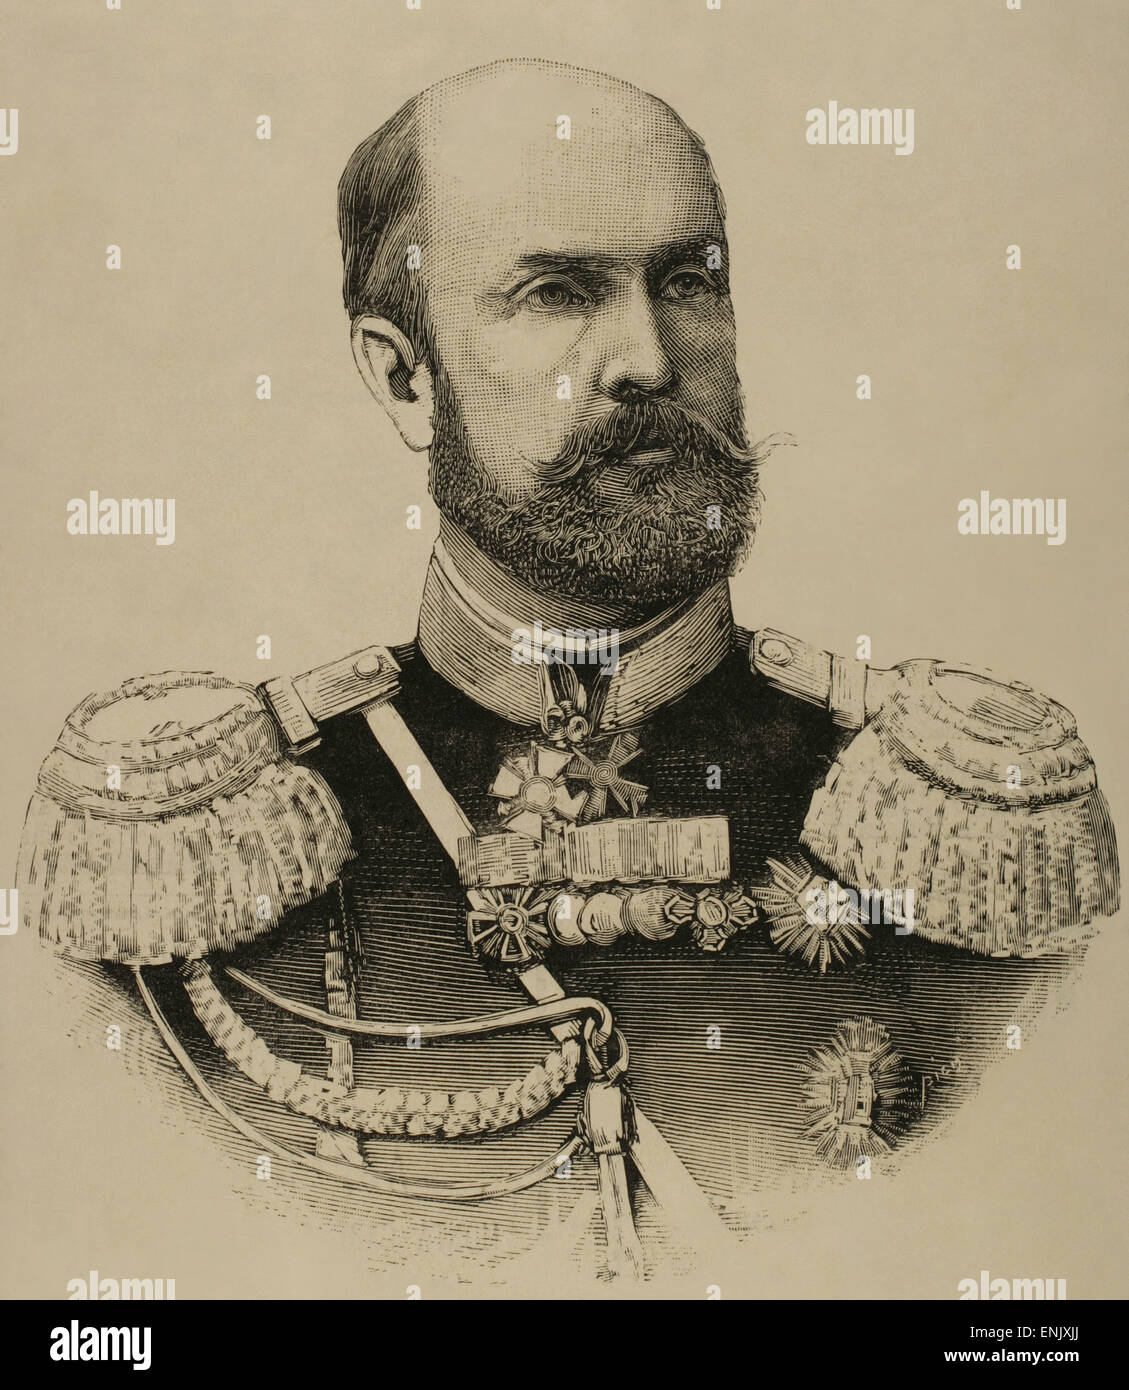 Nikolai Wassiljewitsch barone di Kaulbars (1842-1905). Generale dell'esercito russo e scrittore militare. Incisione. La Ilustracion Espanola, 1886 Foto Stock